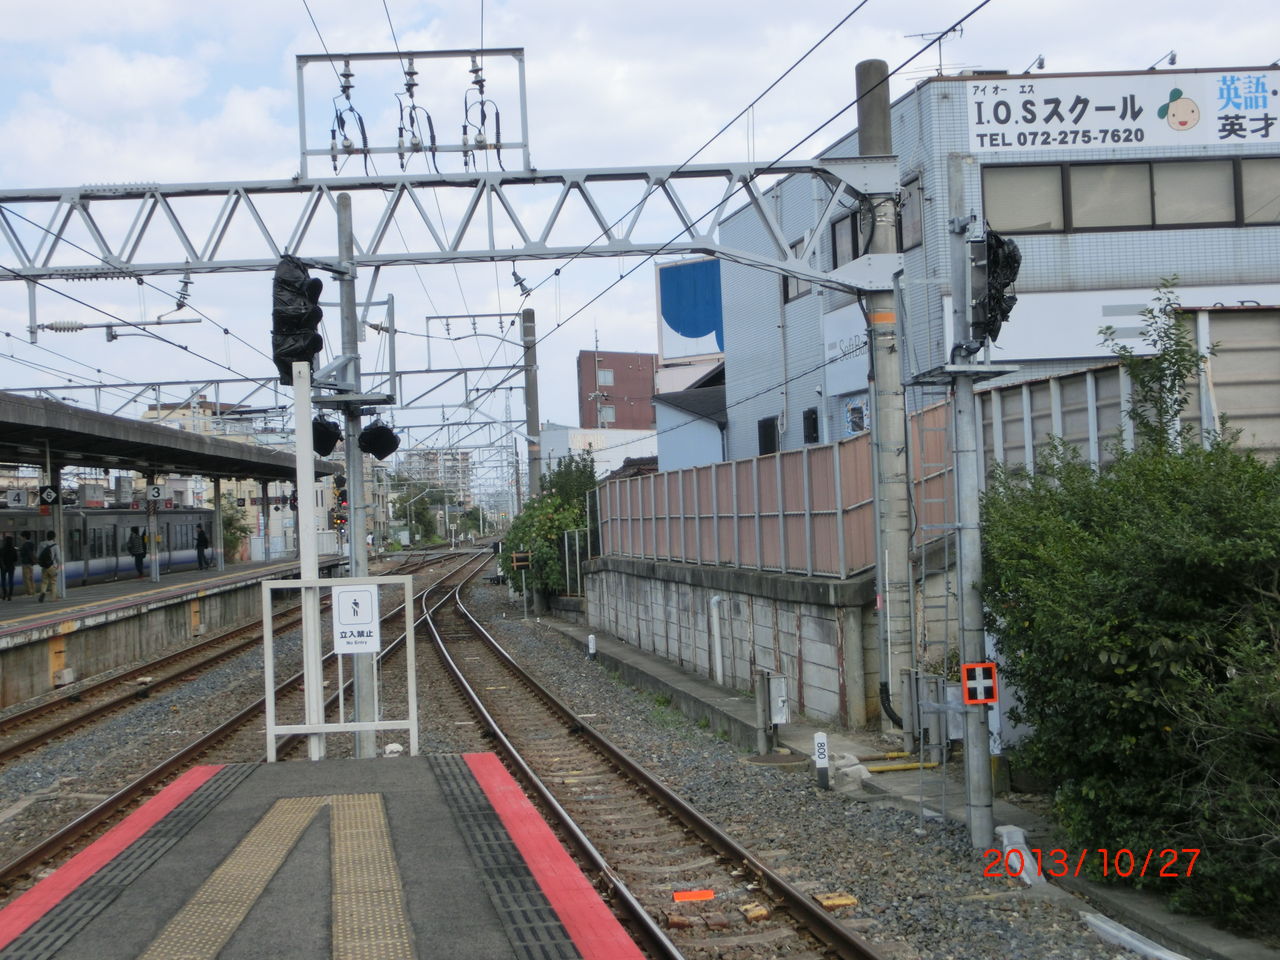 阪和線 鳳駅の折り返し設備が使用開始 和歌山方面への折り返しが可能に 13年12月 関西のjrへようこそ